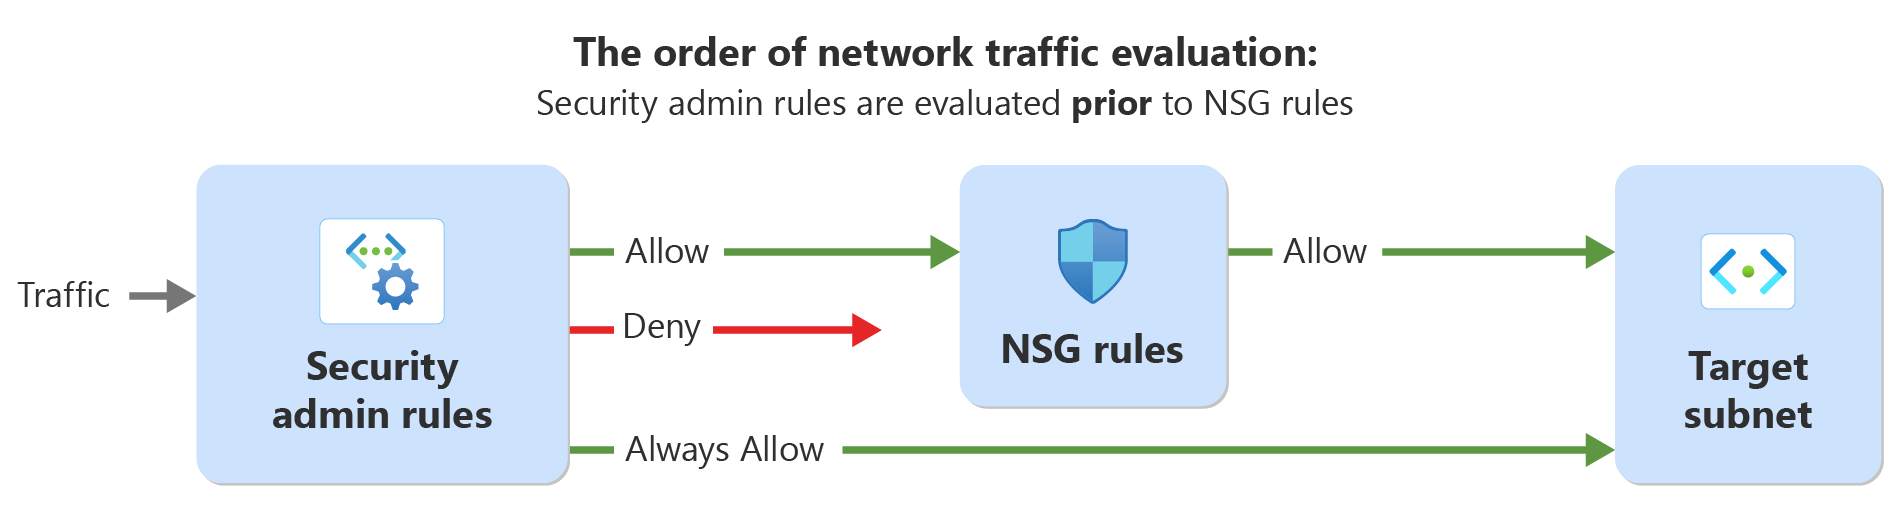 Güvenlik yöneticisi kuralları ve ağ güvenlik kurallarıyla ağ trafiği için değerlendirme sırasını gösteren diyagram.